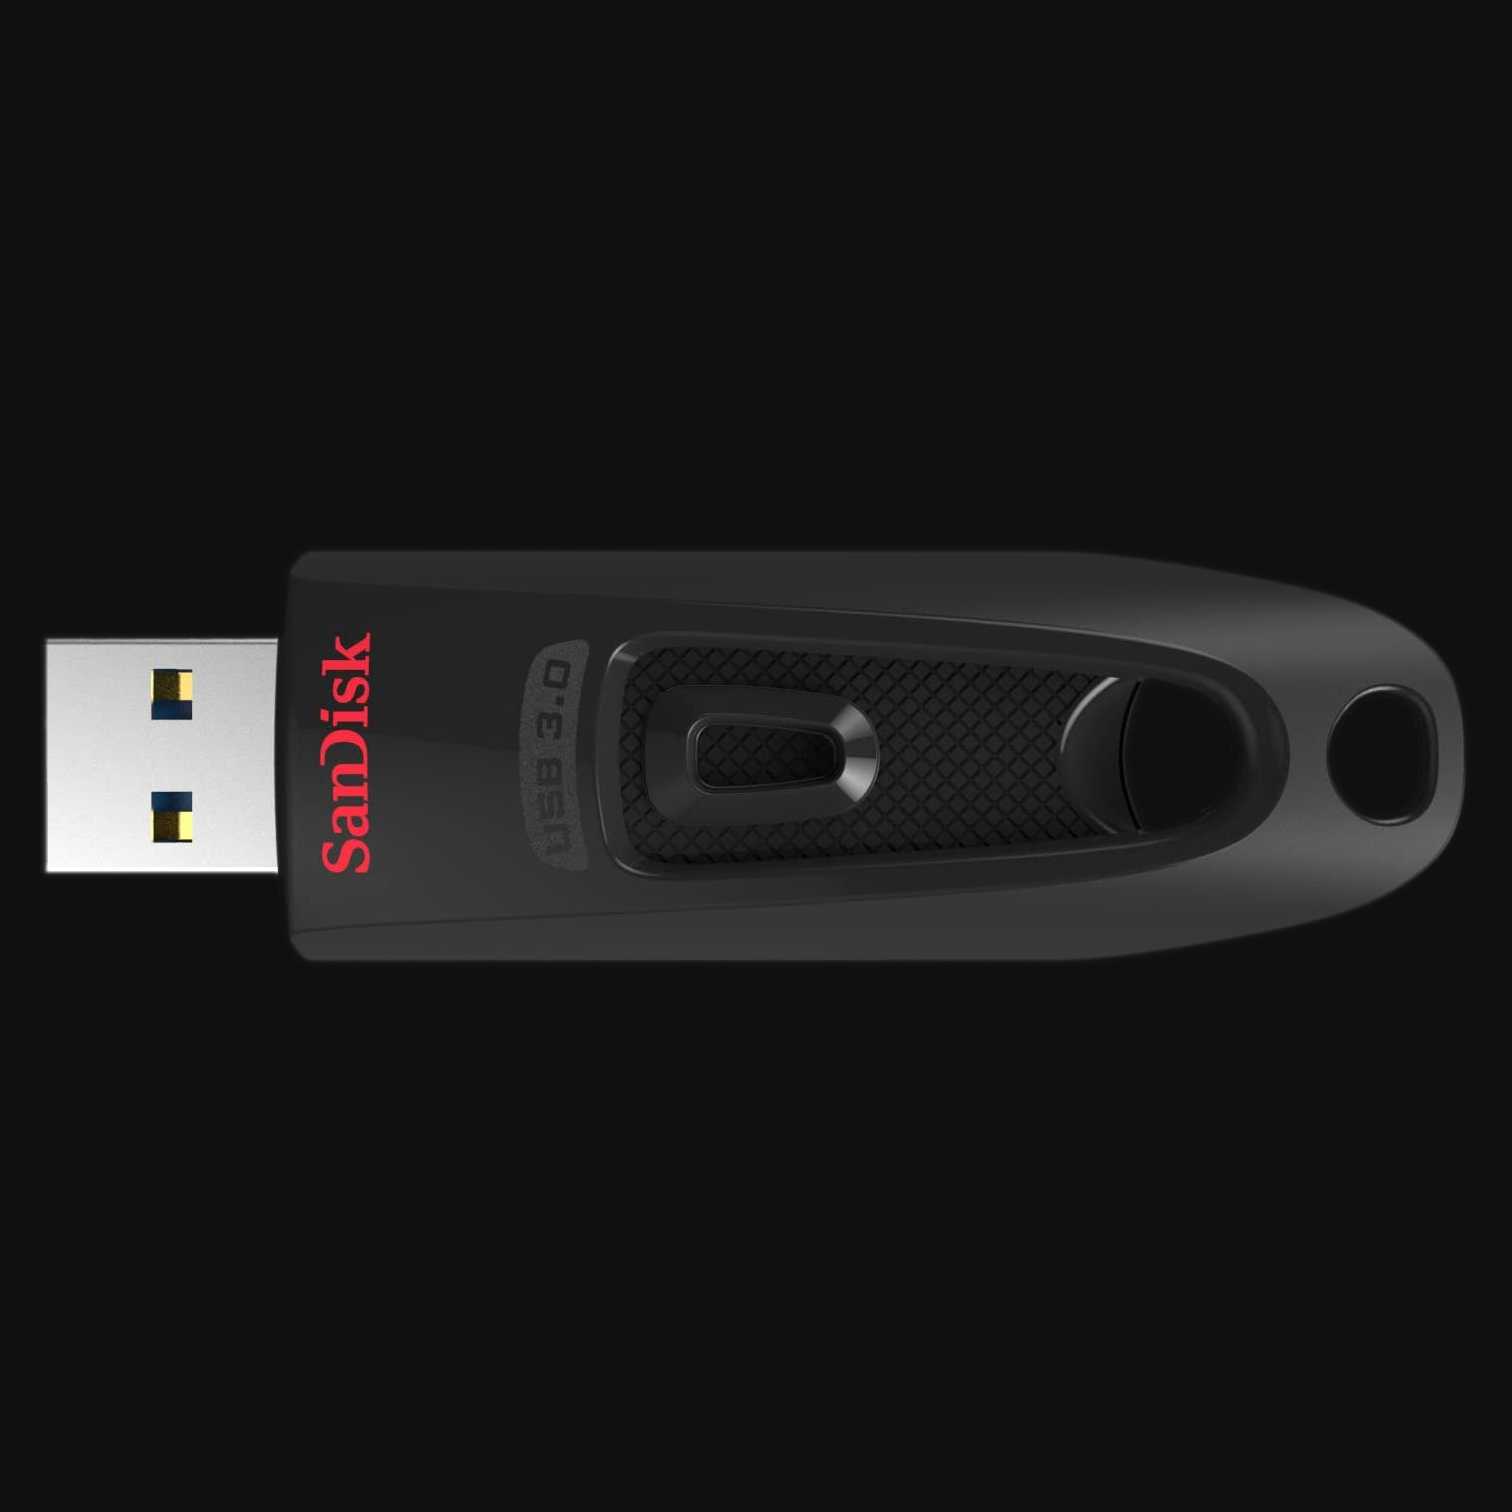 A USB flash drive